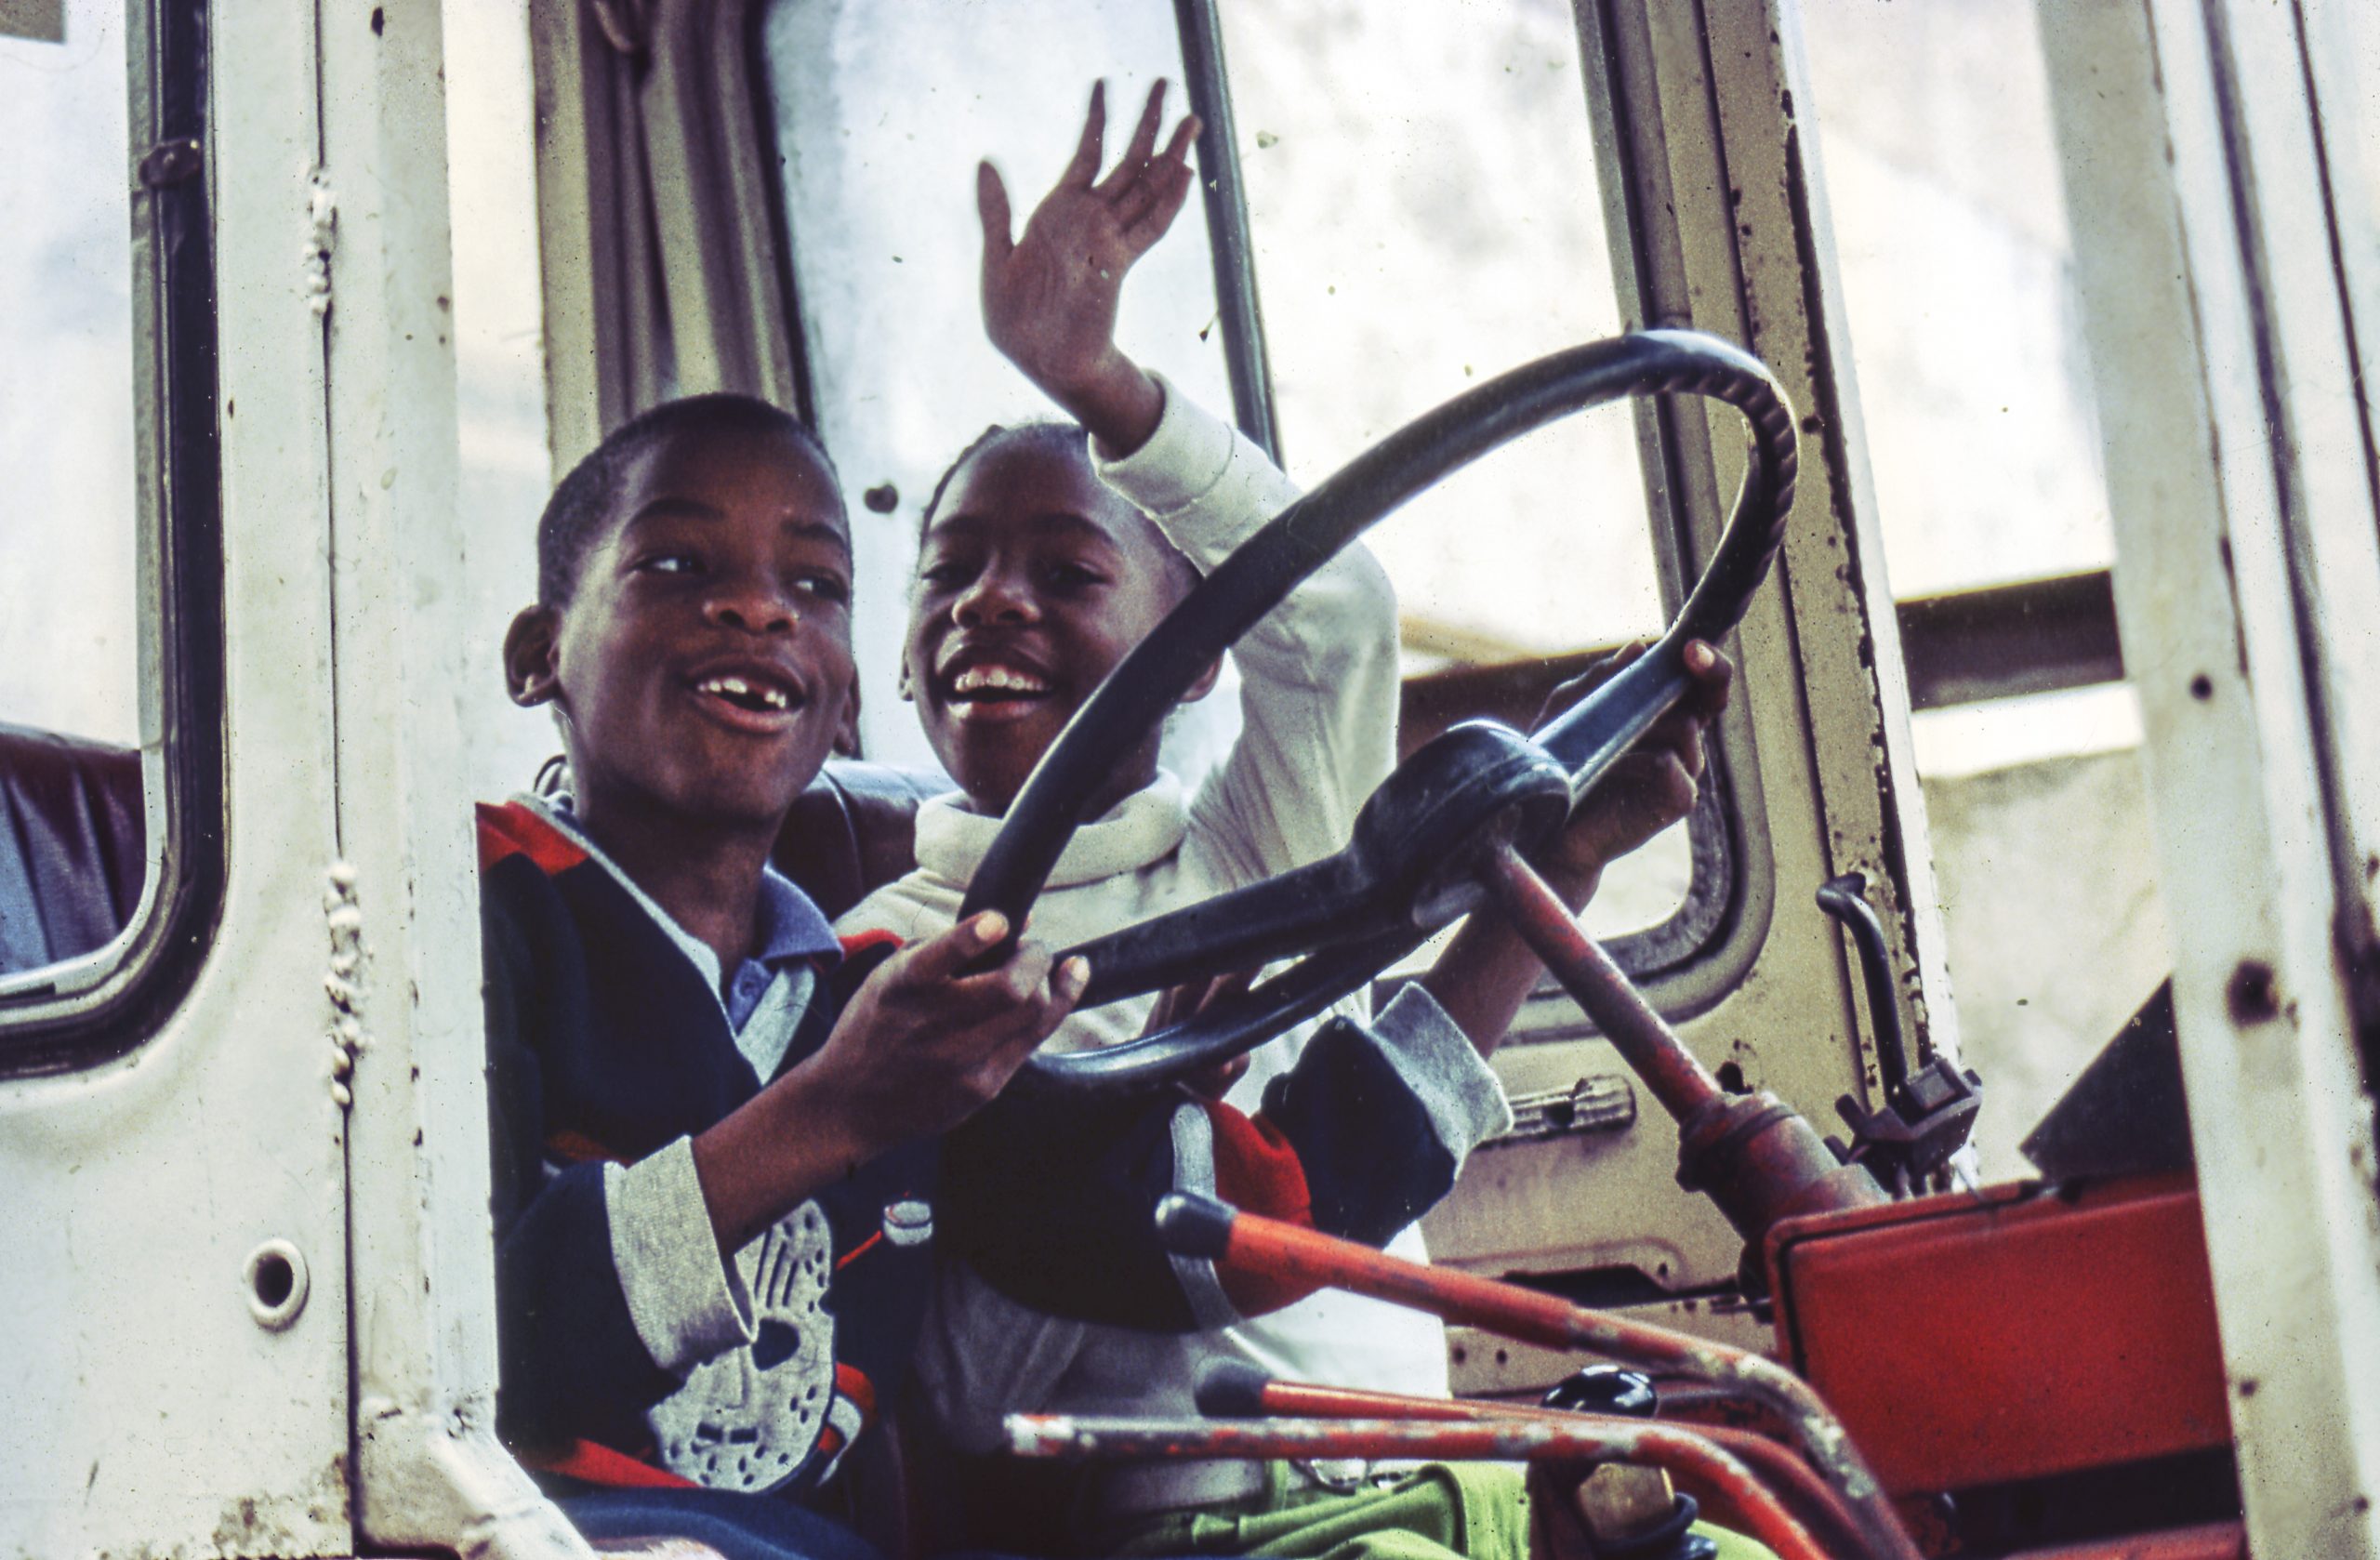 Bambini cubani giocano sopra un camion dismesso nelle foto di viaggio.